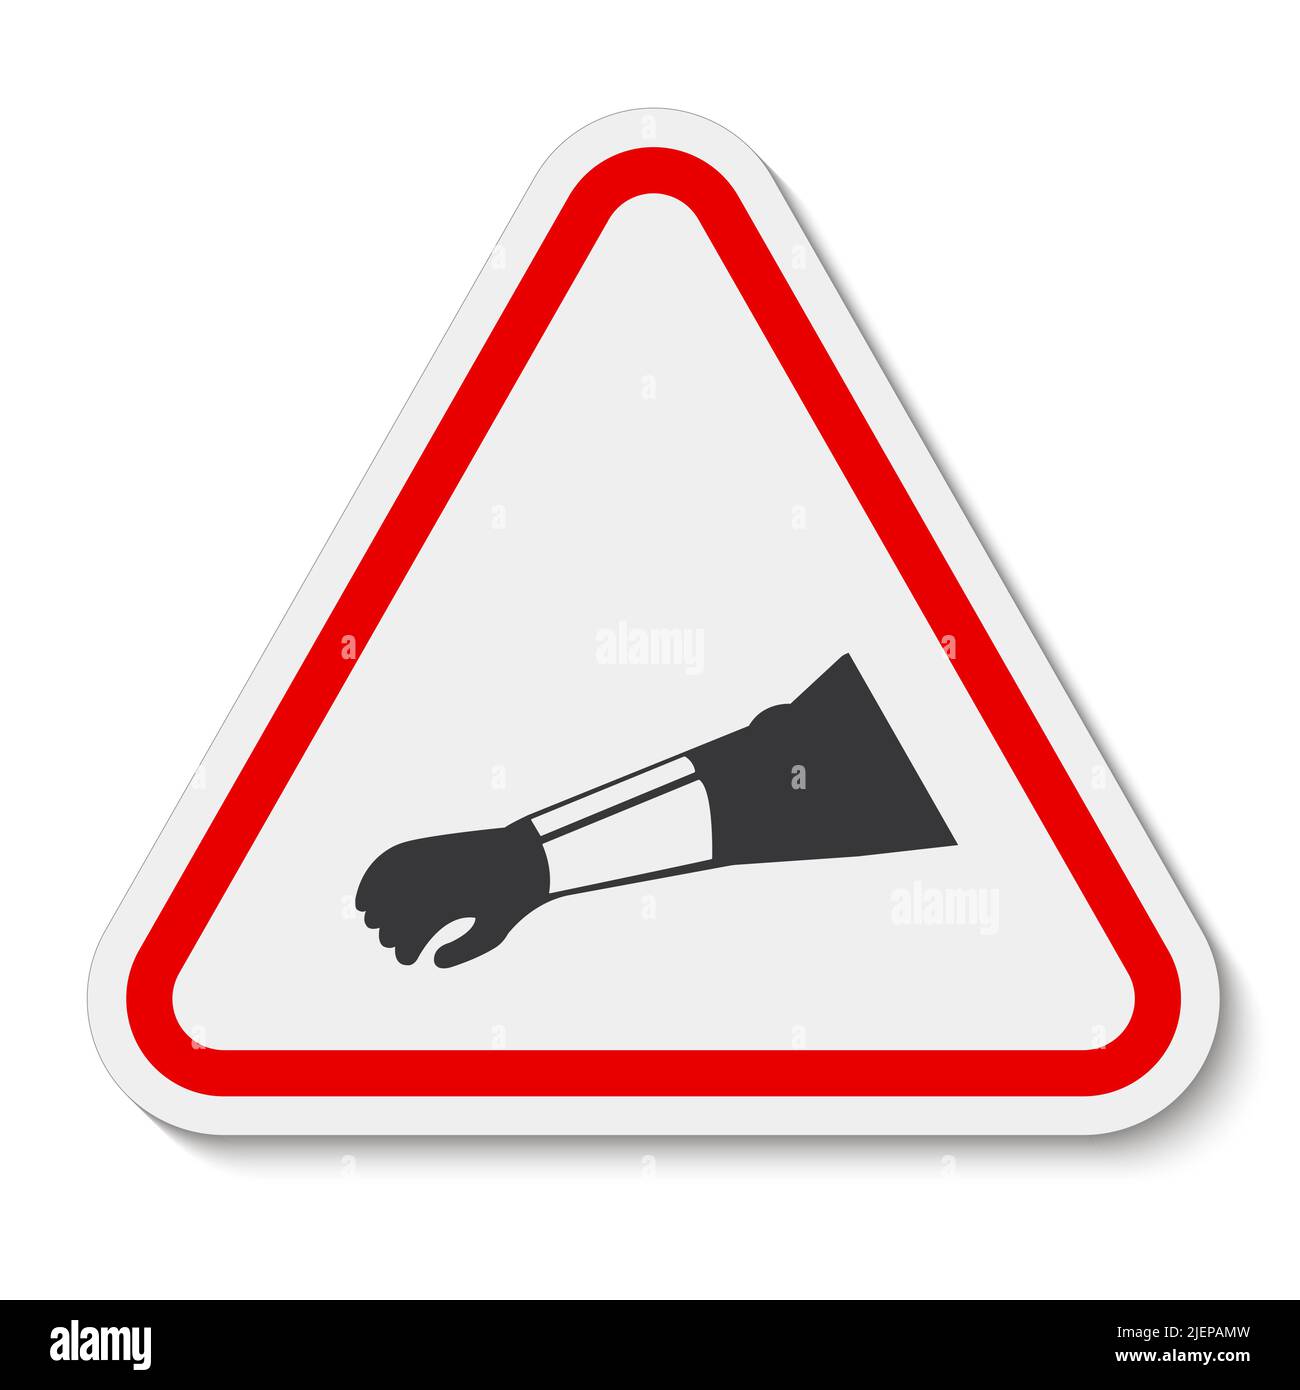 Symbol Verschleiß Arm Schutzschild isolieren auf weißem Hintergrund, Vektor-Illustration EPS.10 Stock Vektor